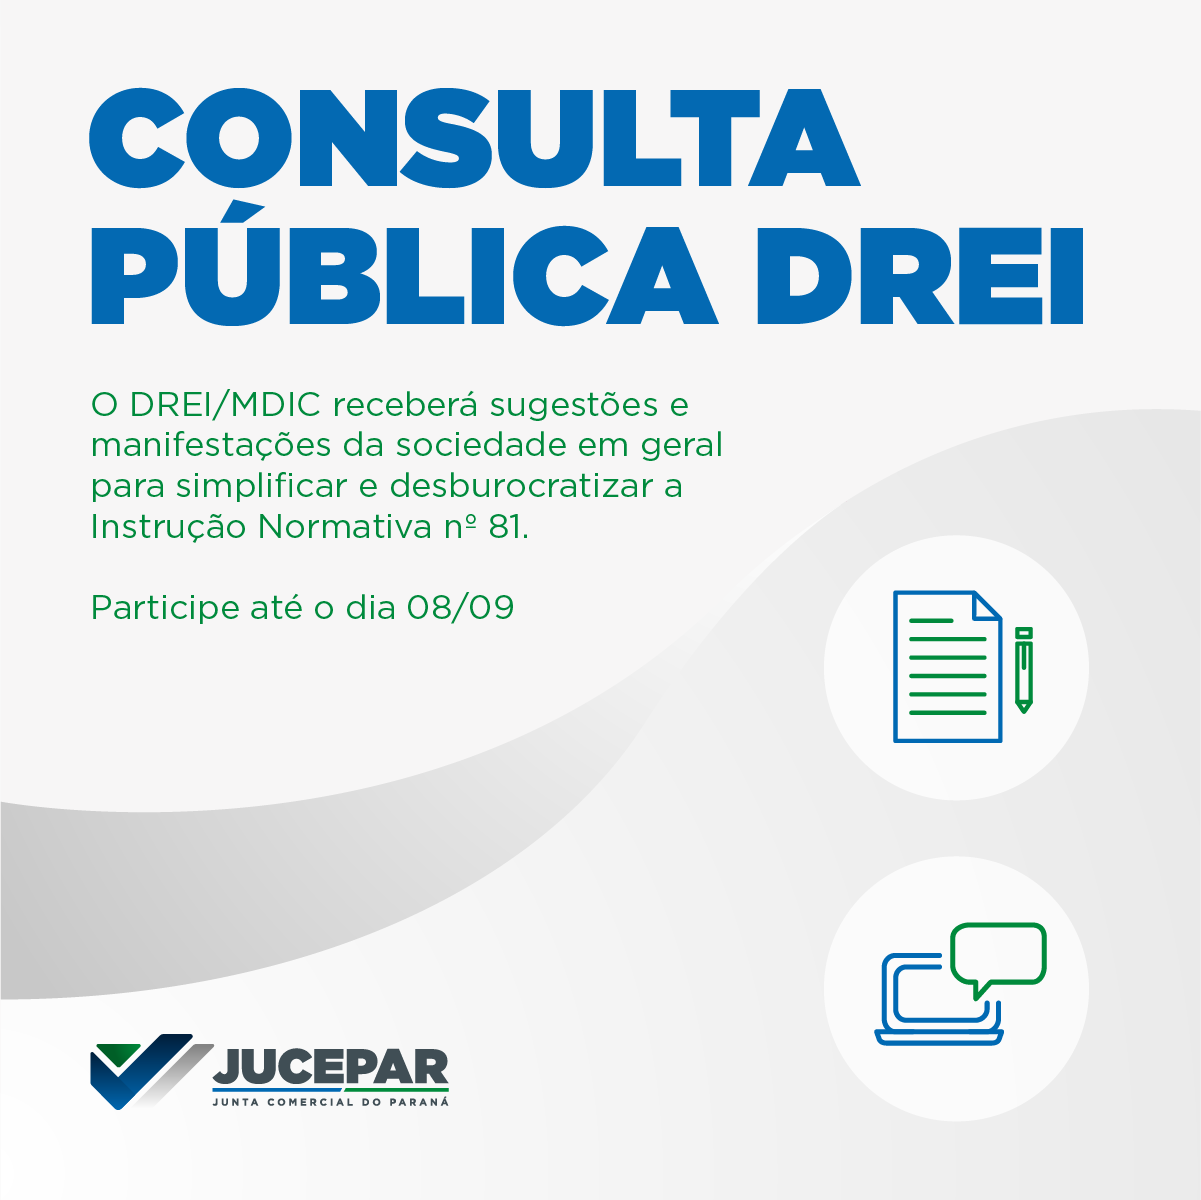 Consulta Pública DREI